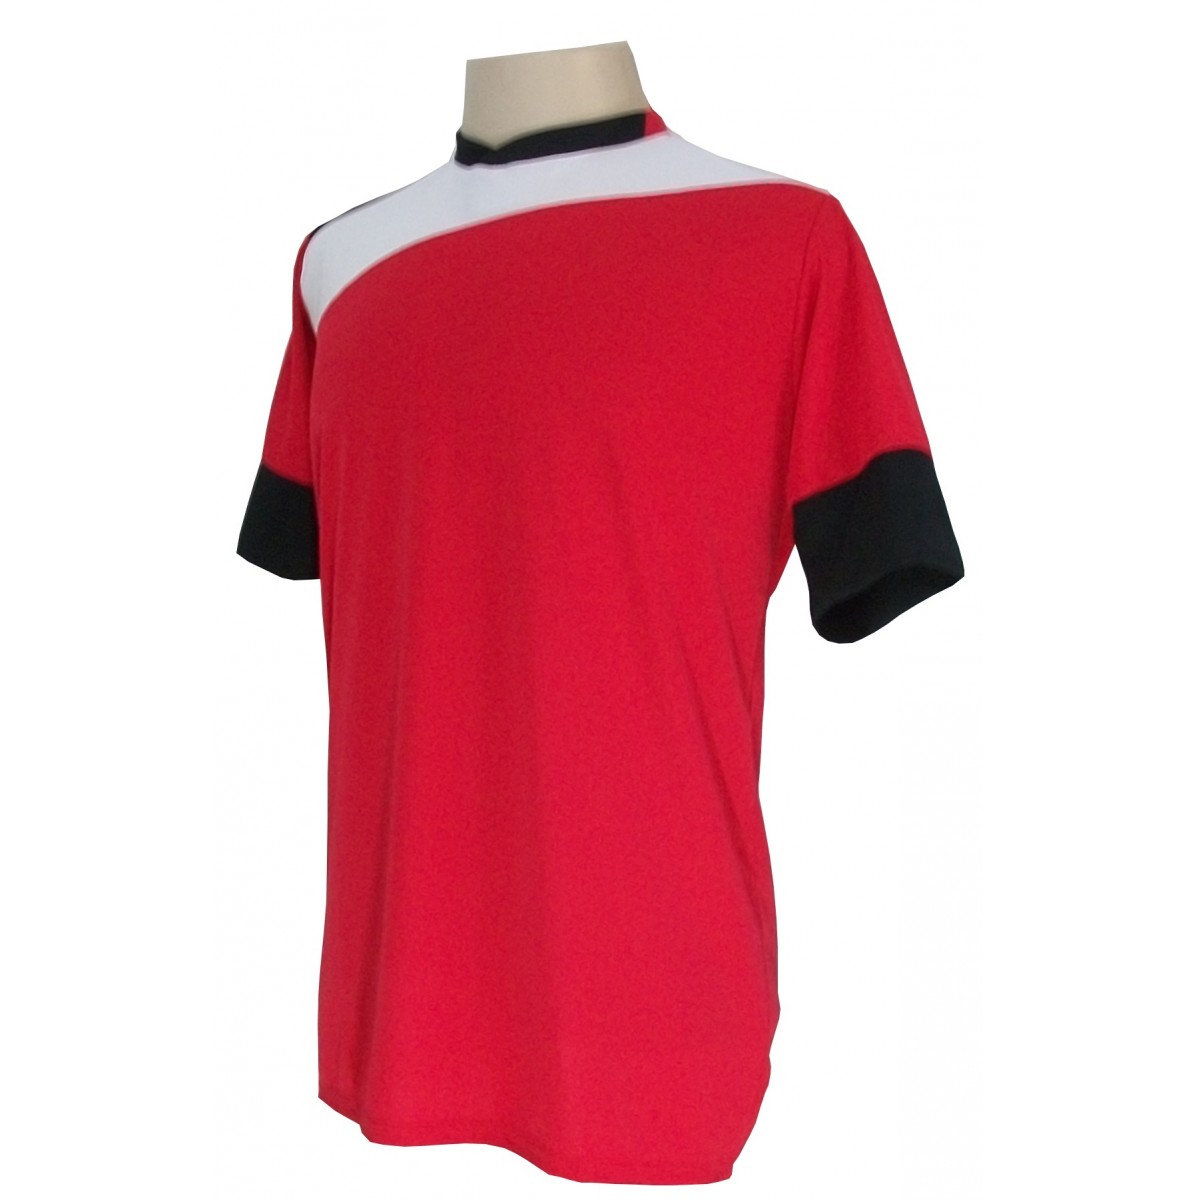 Uniforme Esportivo com 14 camisas modelo Sporting Vermelho/Branco/Preto + 14 calções modelo Madrid Branco + Brindes